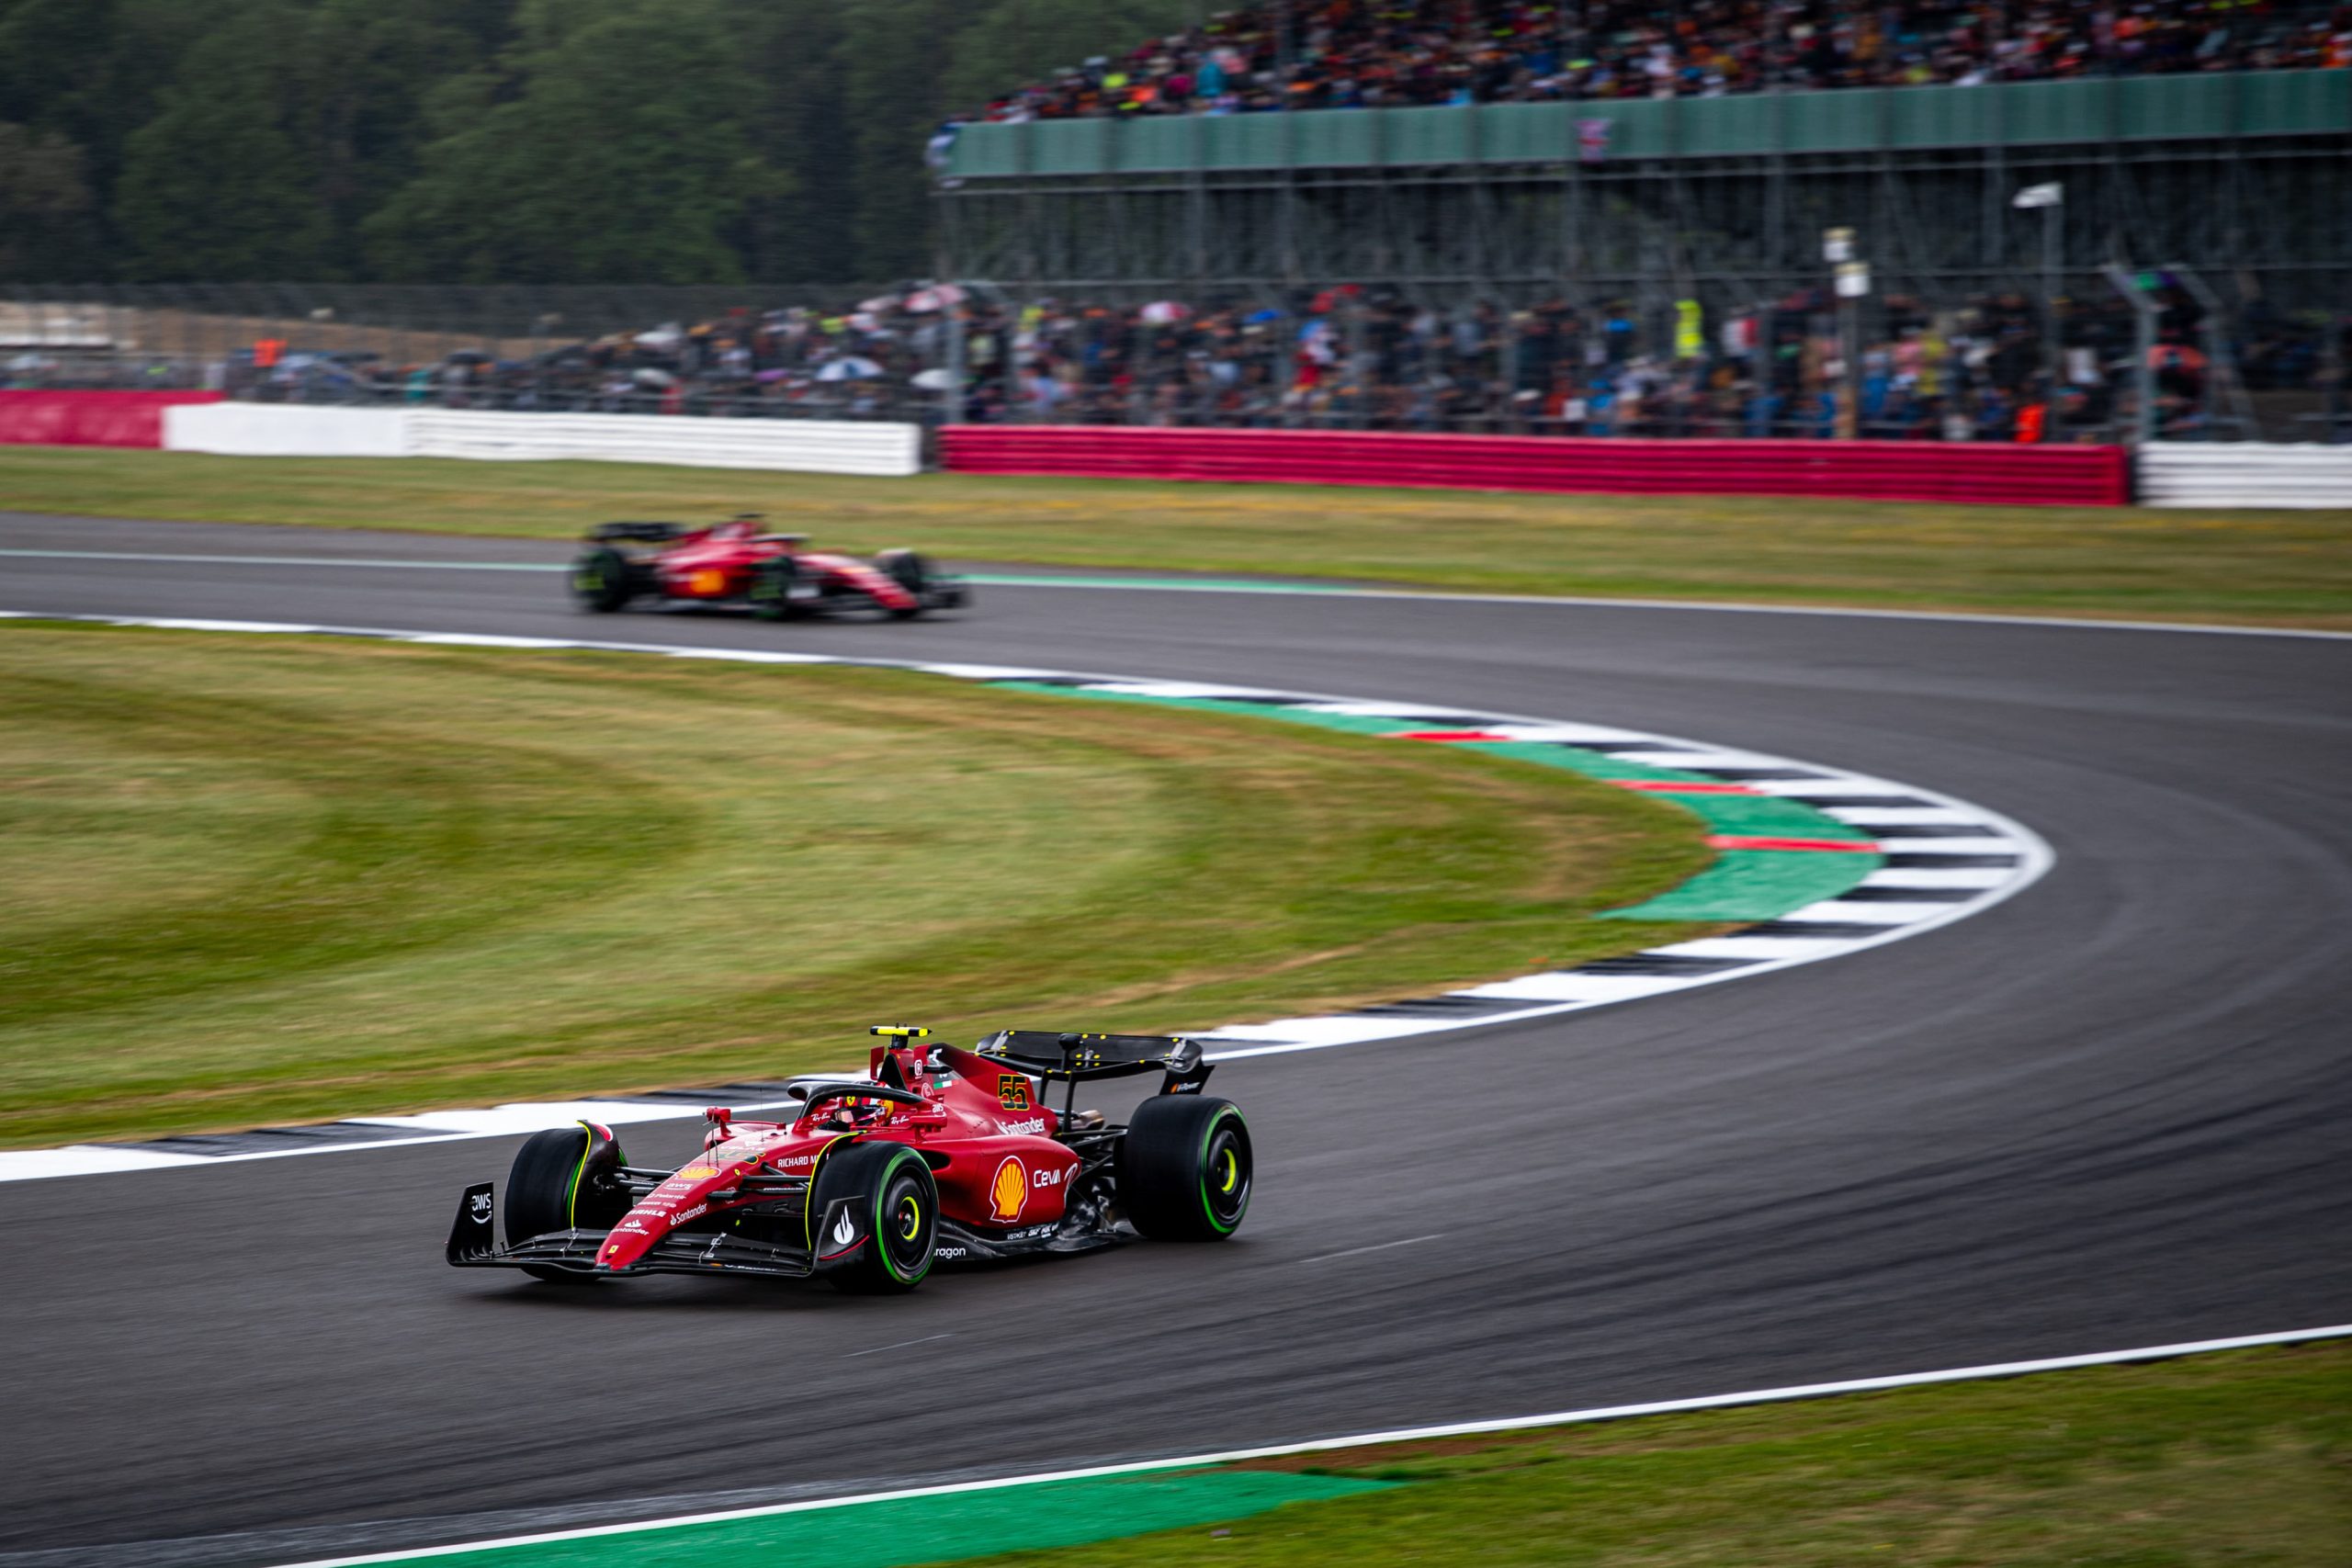 Qualifica F1, Gp Silverstone 2022: Super Pole Position di Carlos Sainz, Verstappen secondo.